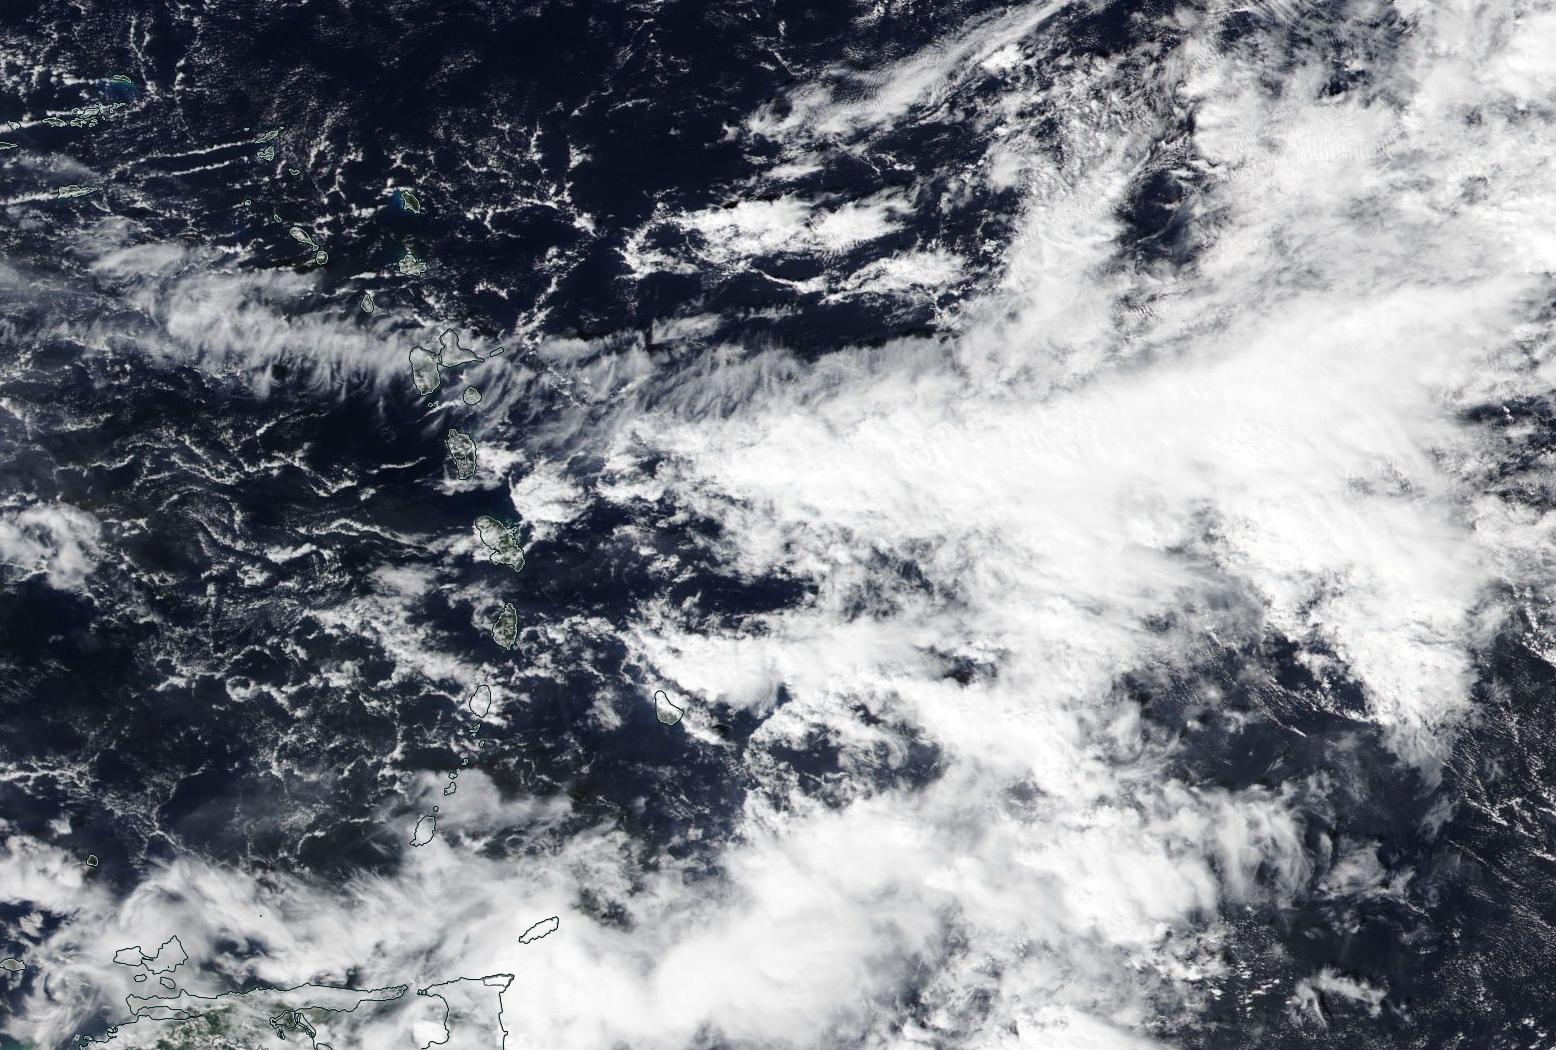     Météo : la Guadeloupe maintenue en vigilance jaune pour fortes pluies et orages

